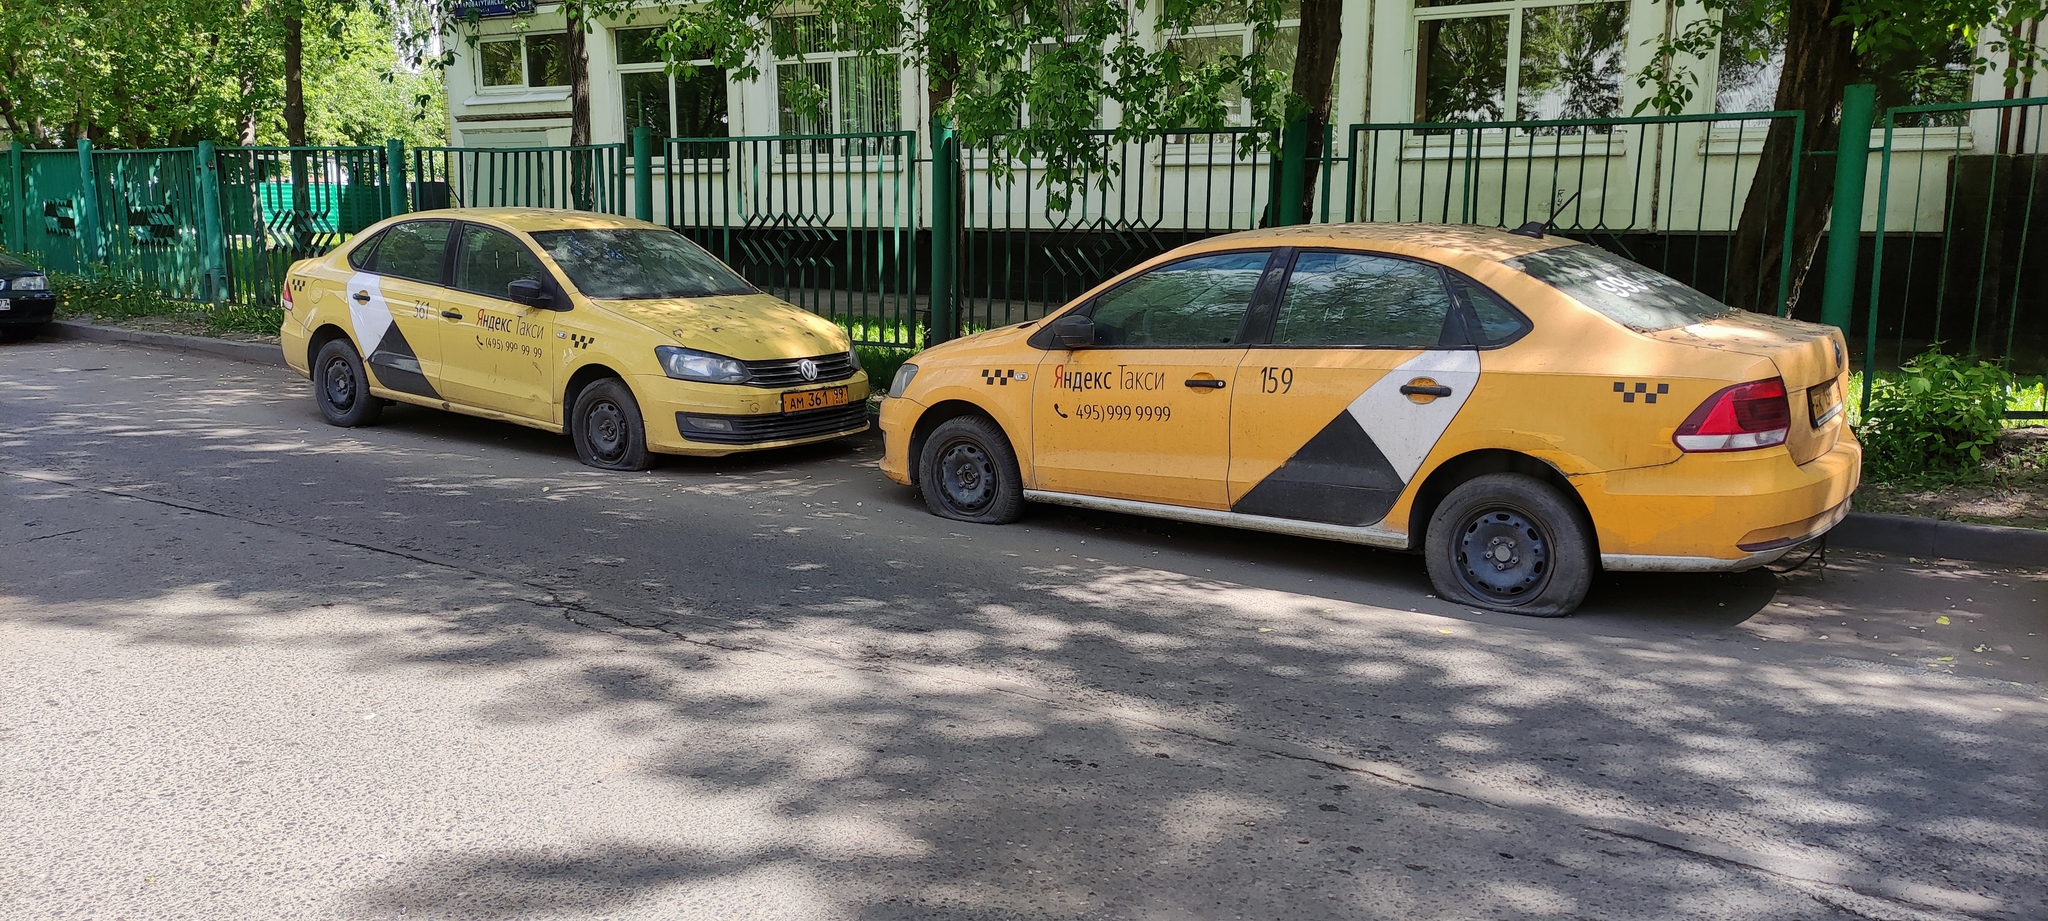 Заброшенные машины Яндекс.такси